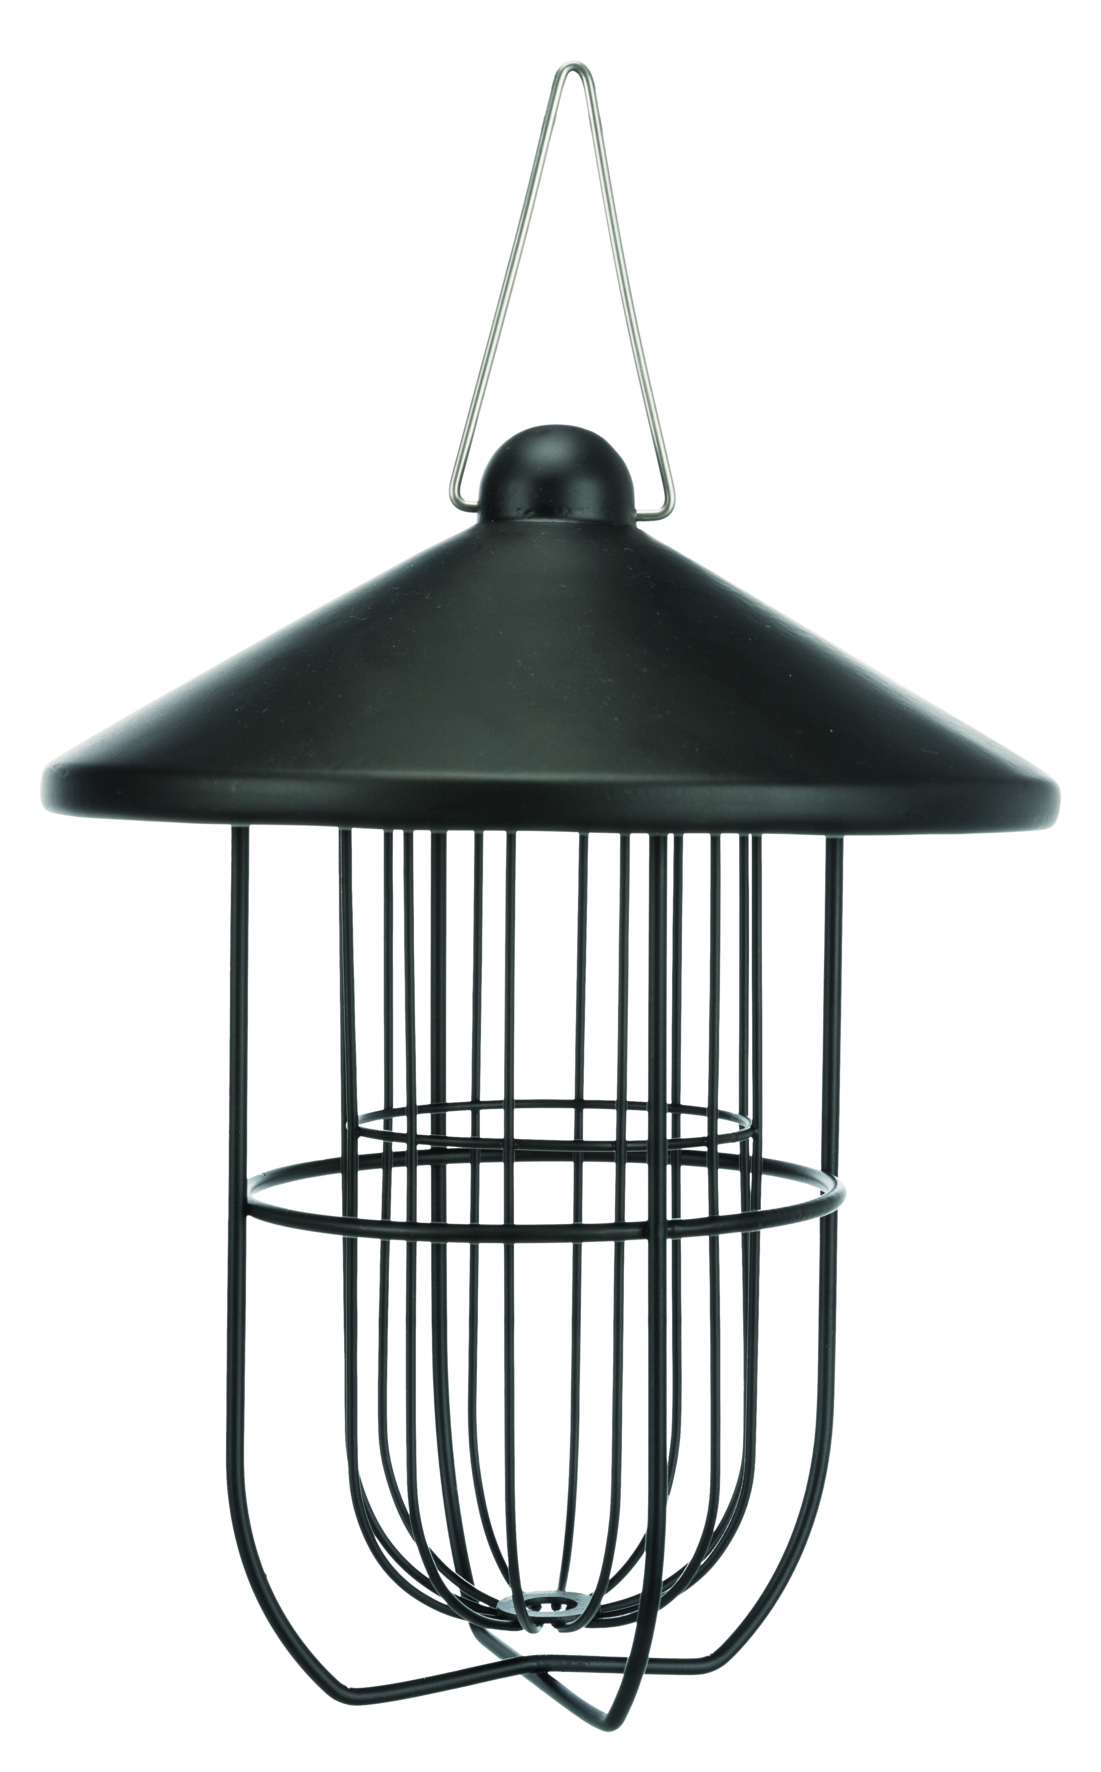 Meisenknödelhalter mit Dach aus Metall pulverbeschichtet, ø 19 × 24 cm, schwarz seidenmatt